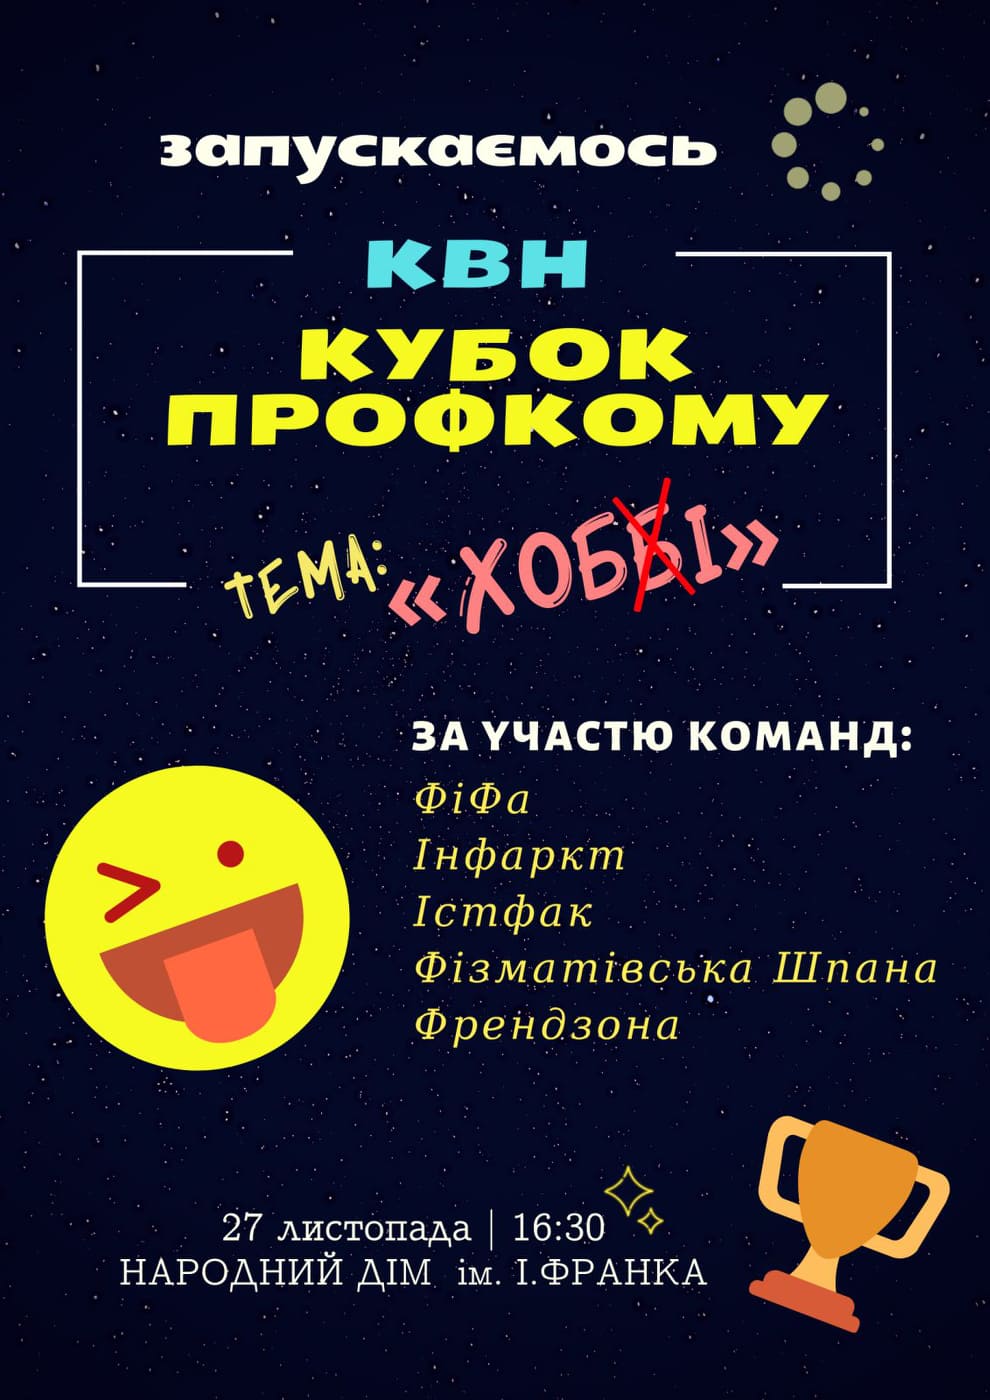 Дрогобицькі студенти запрошують усіх на гумористичне шоу «Кубок Профкому»